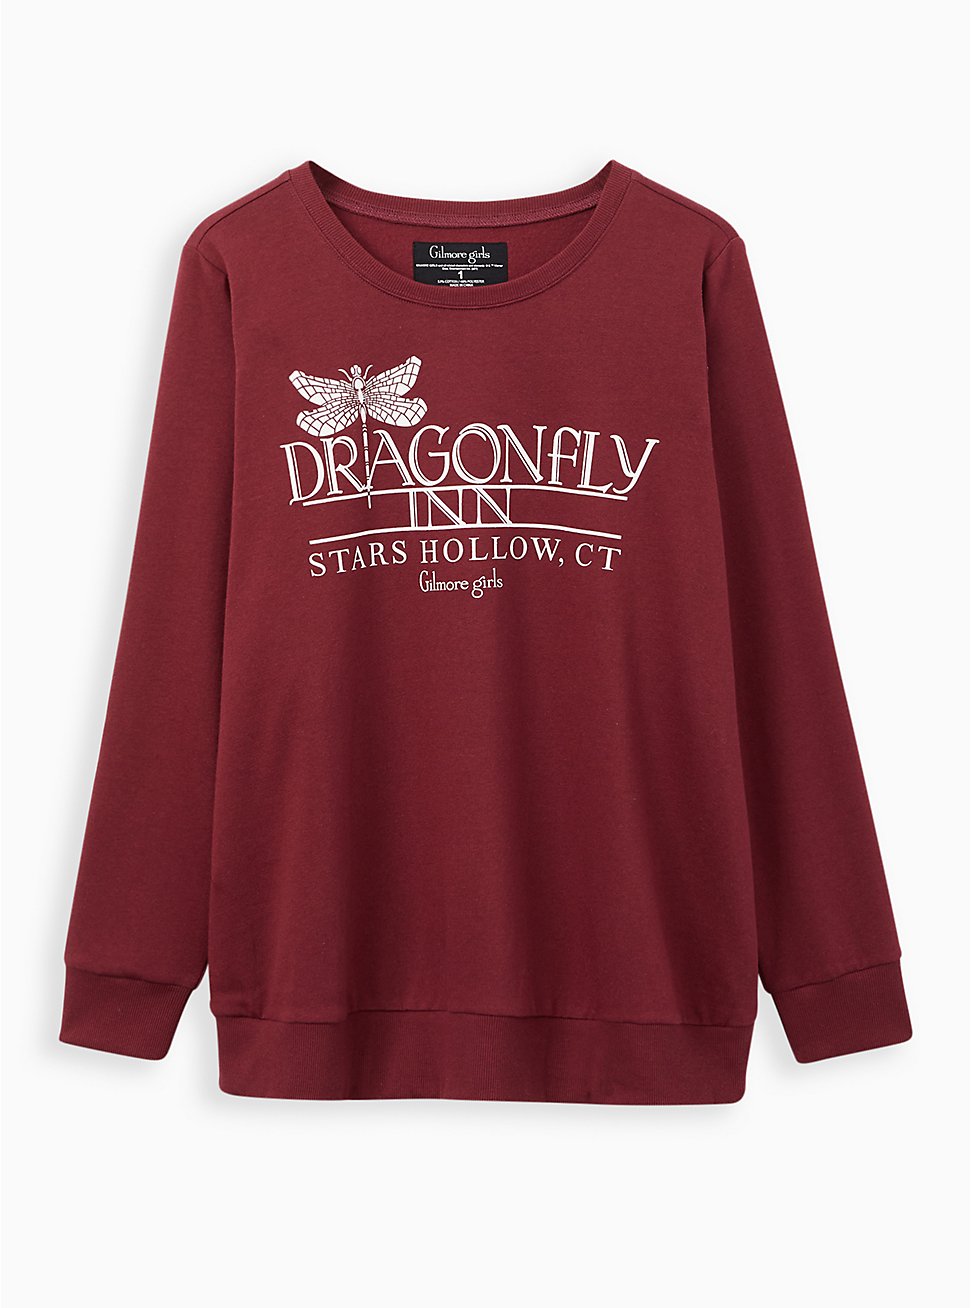 Sweatshirt - Cozy Fleece Gilmore Girls Dragonfly Inn Wine, ZINFANDEL, hi-res